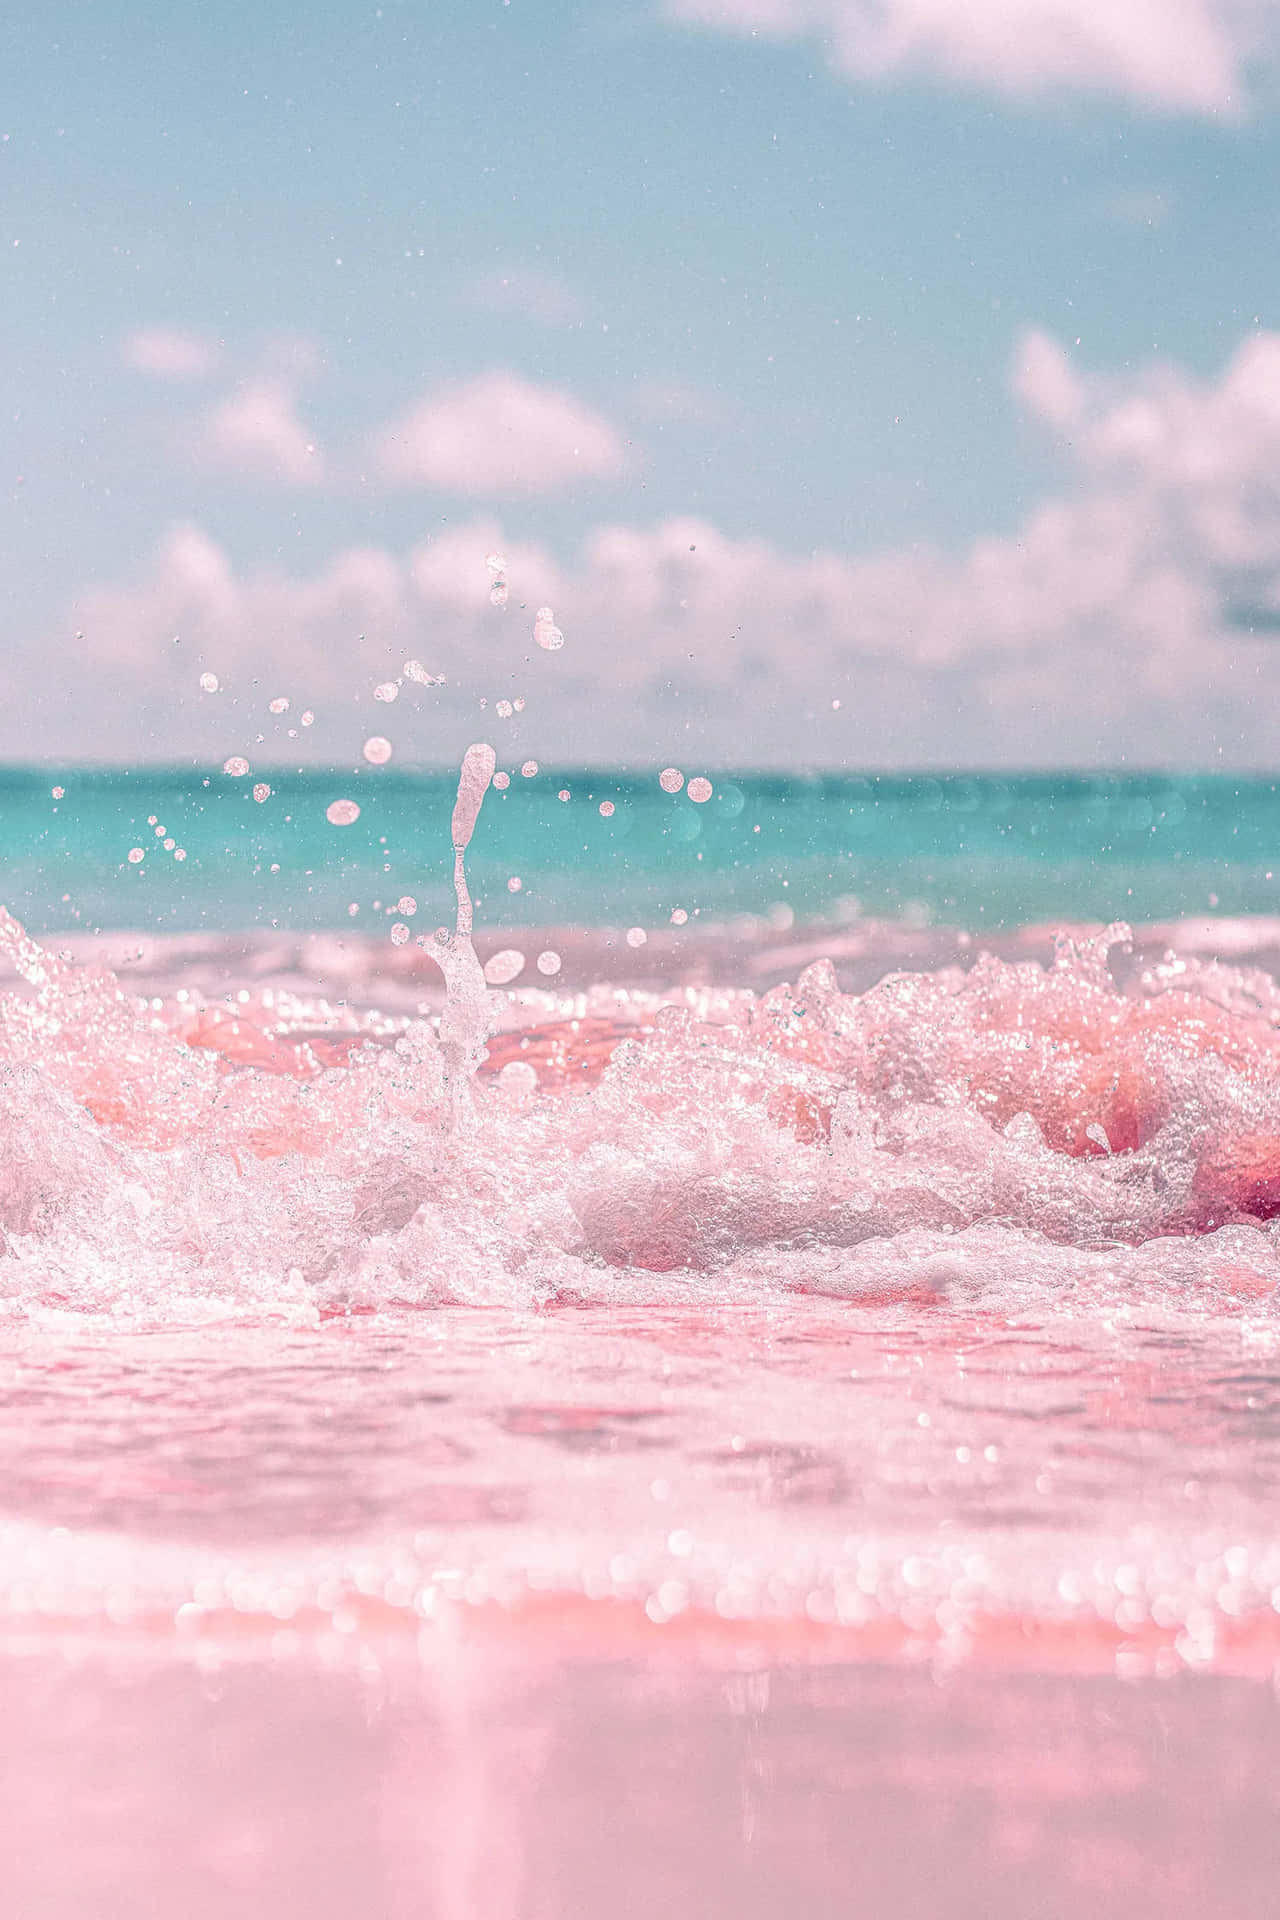 Hình nền tuyệt đẹp cho người yêu sắc hồng - Pink Beach Aesthetic Wallpaper, khiến bạn đắm chìm trong vẻ đẹp của bãi biển xinh đẹp với những cánh hoa hồng tươi sáng đang nổi bật trên nền trắng mịn màng. Hãy tải về hình nền này để mang lại sự tươi mới và độc đáo cho thiết bị của mình.